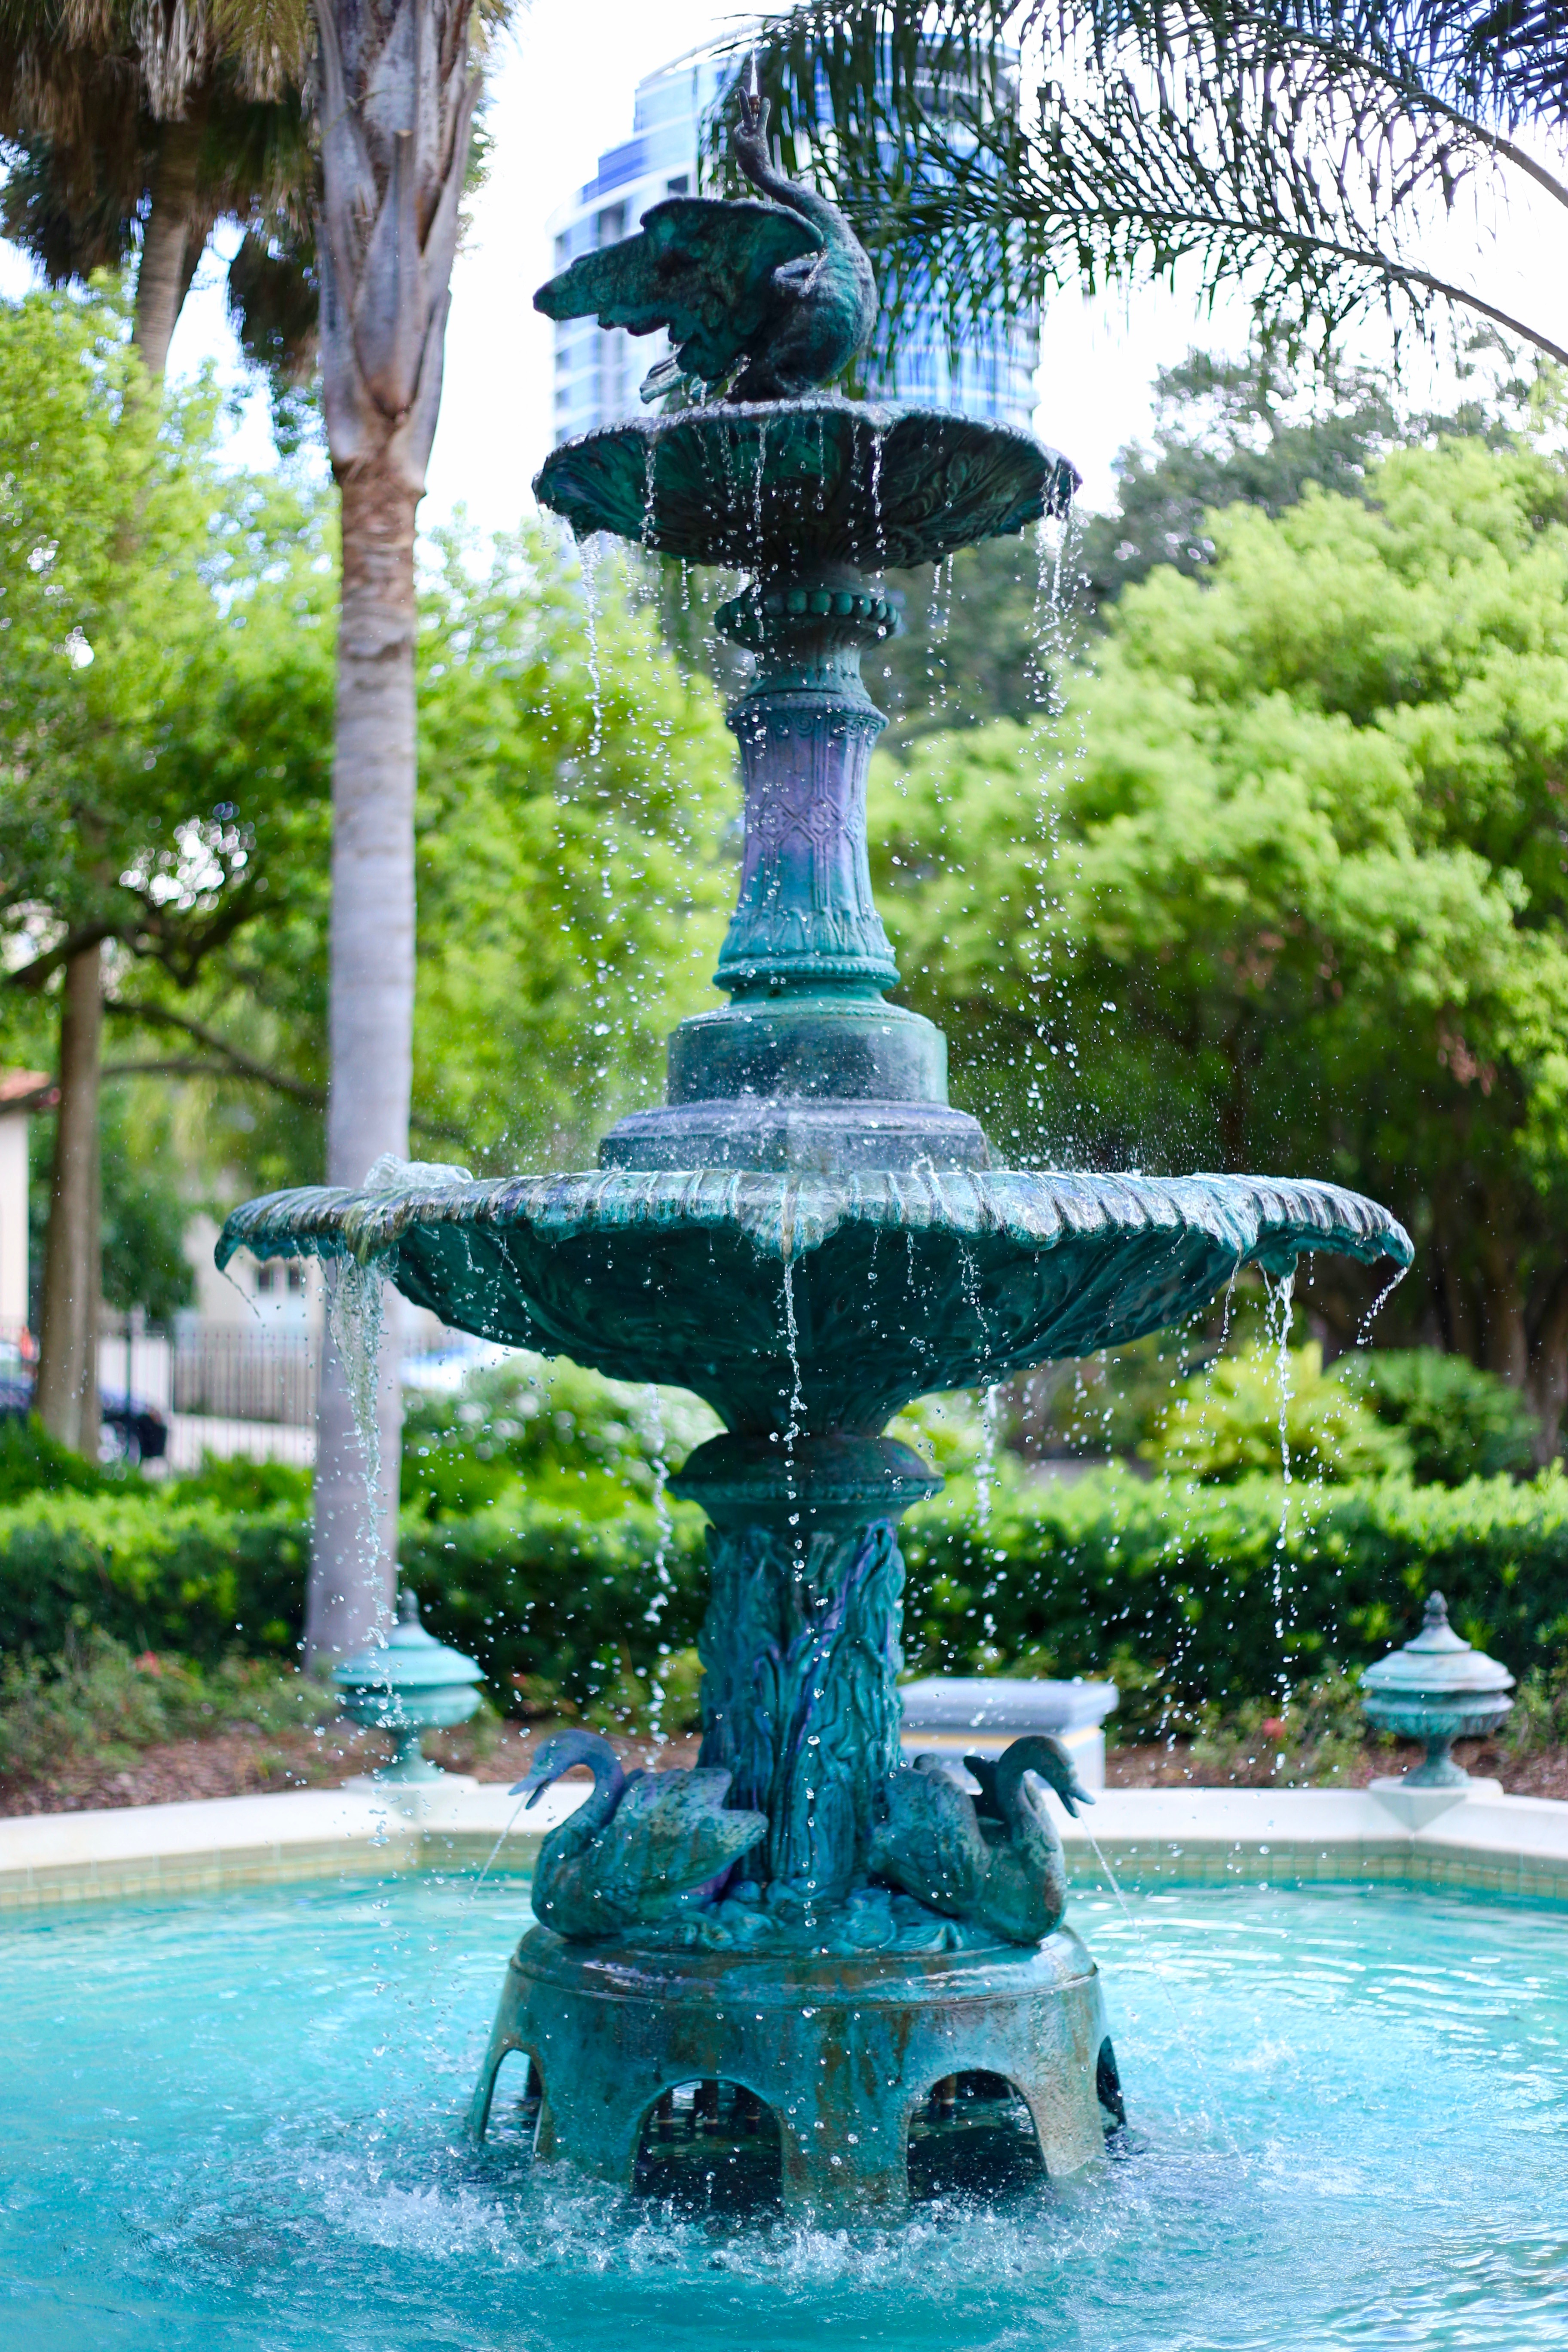 Sperry Fountain by Christine Velotta